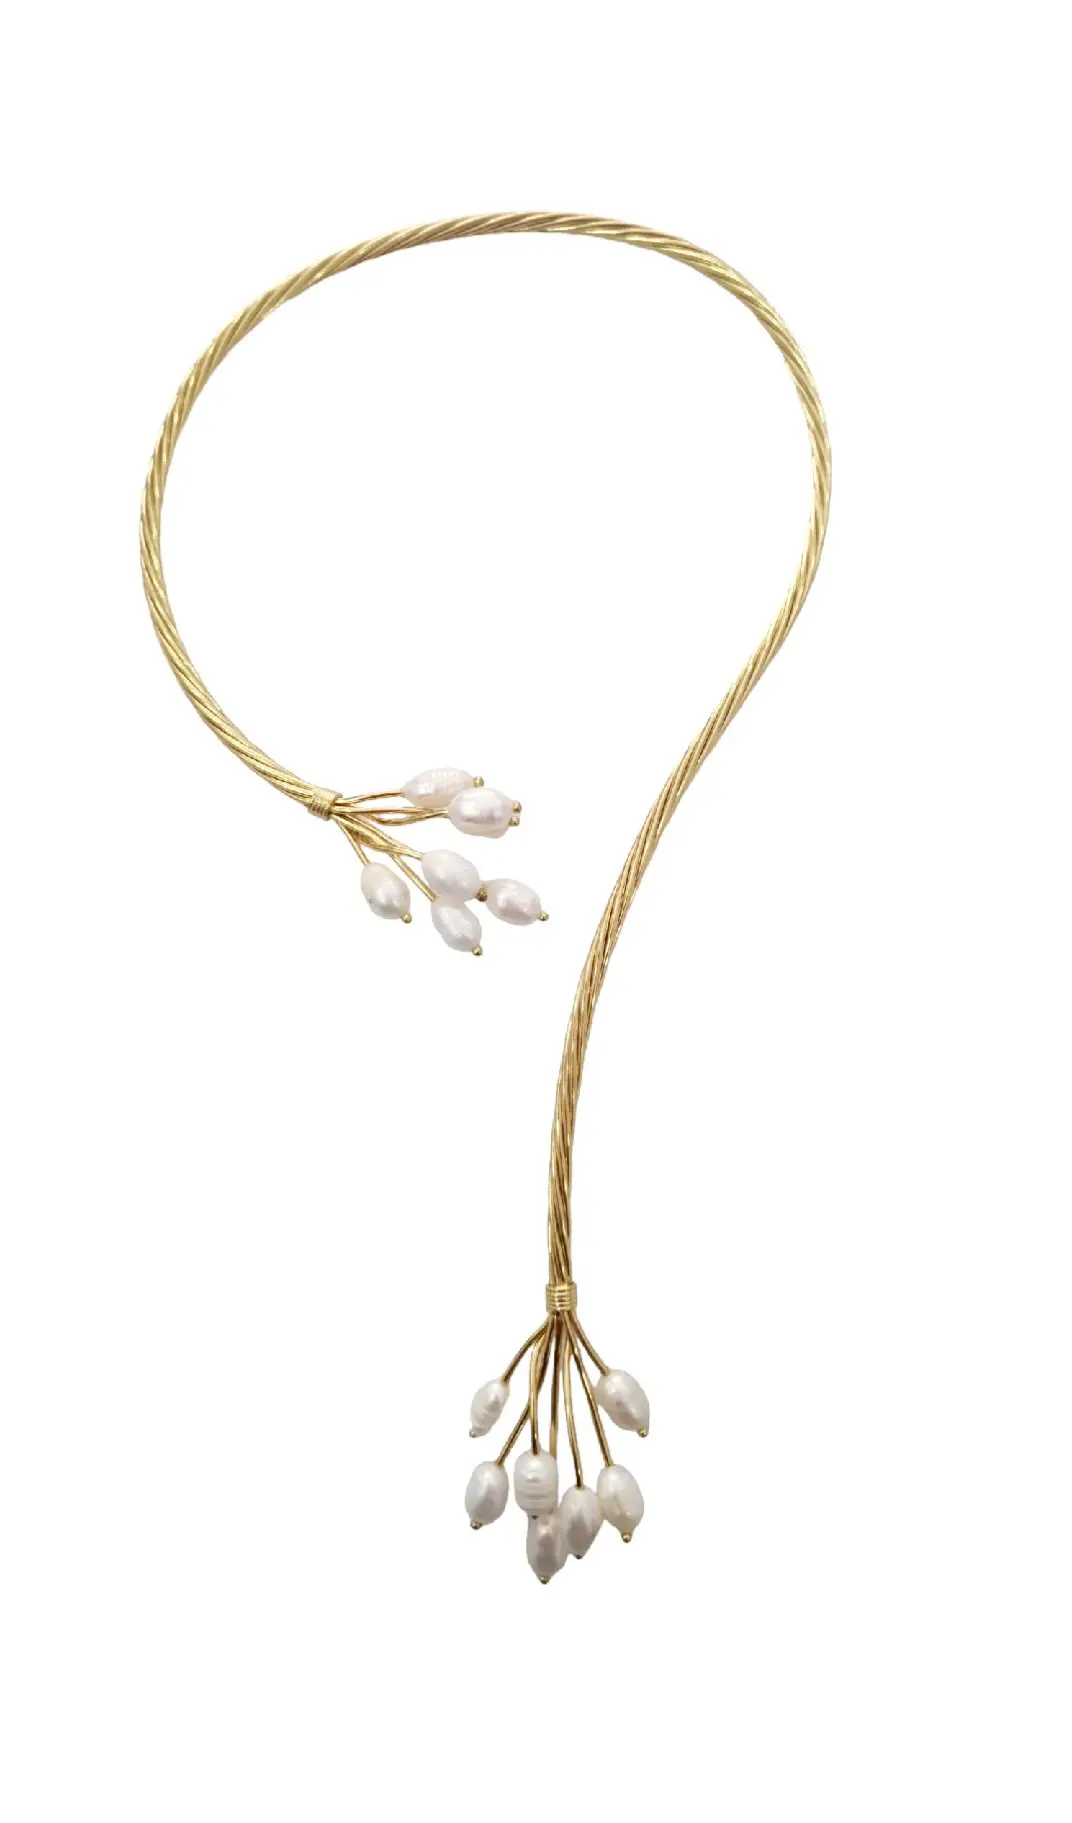 Parure: collana orecchini,bracciale ed anello regolabili realizzati in ottone e perle di fiume.